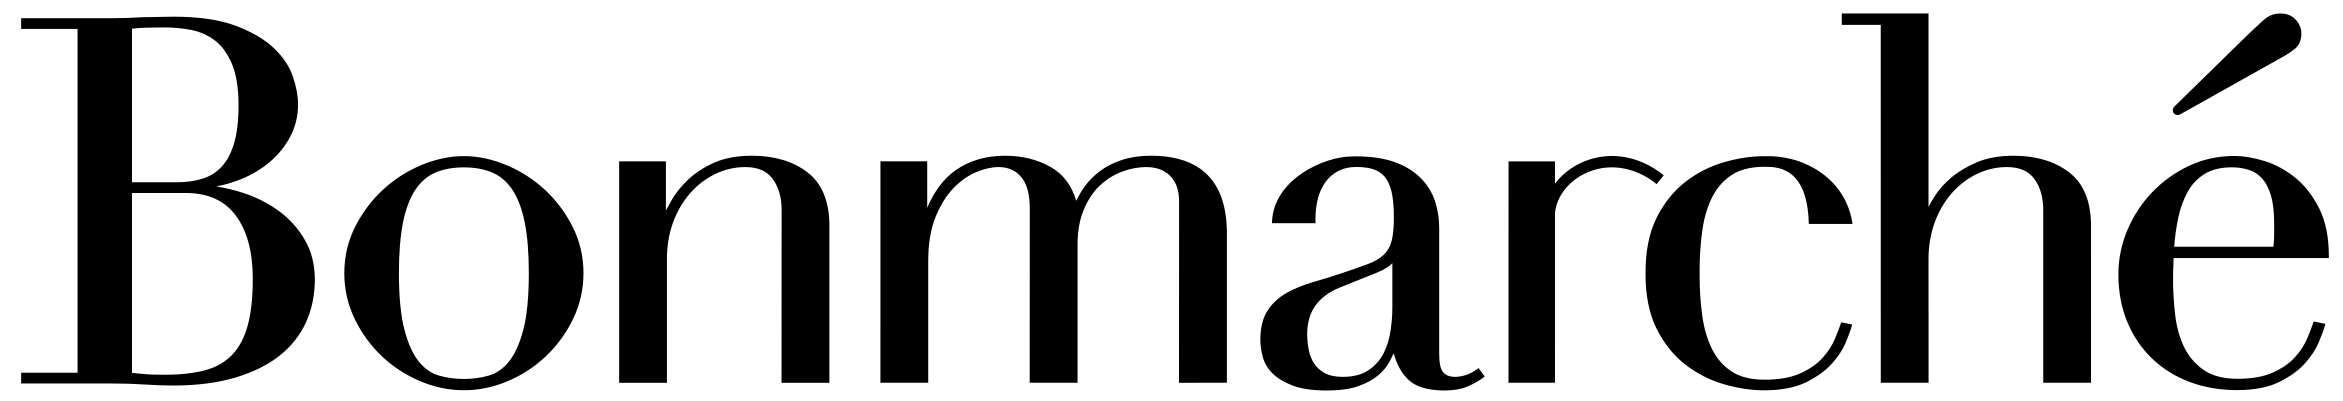 Bonmarché_Logo